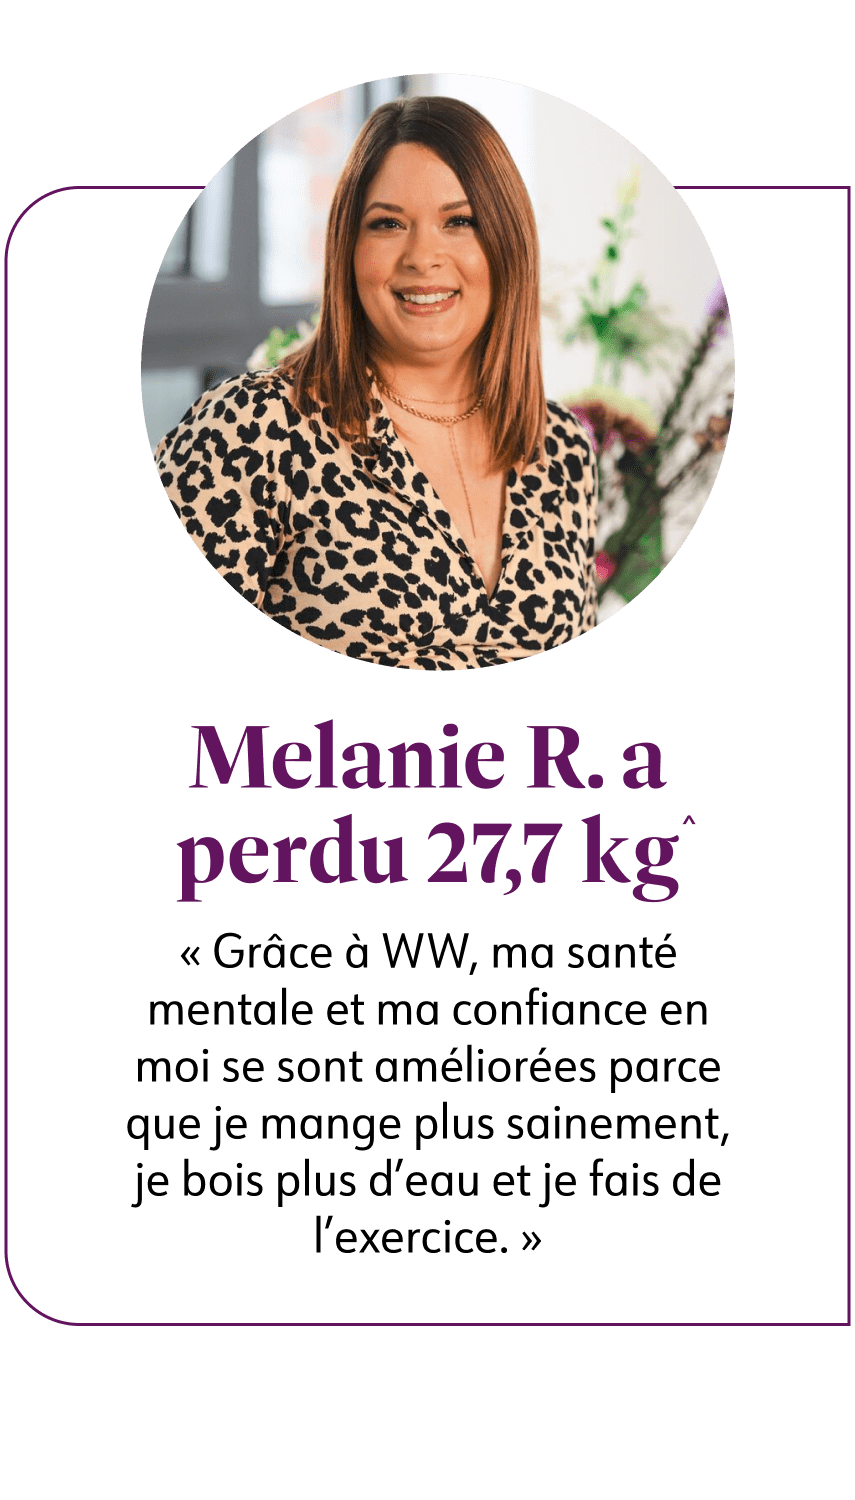 Melanie R. a perdu 27,7 kg^ Grâce à WW, ma santé mentale et ma confiance en moi se sont améliorées parce que je mange plus sainement, je bois plus d'eau et je fais de l'exercice. 